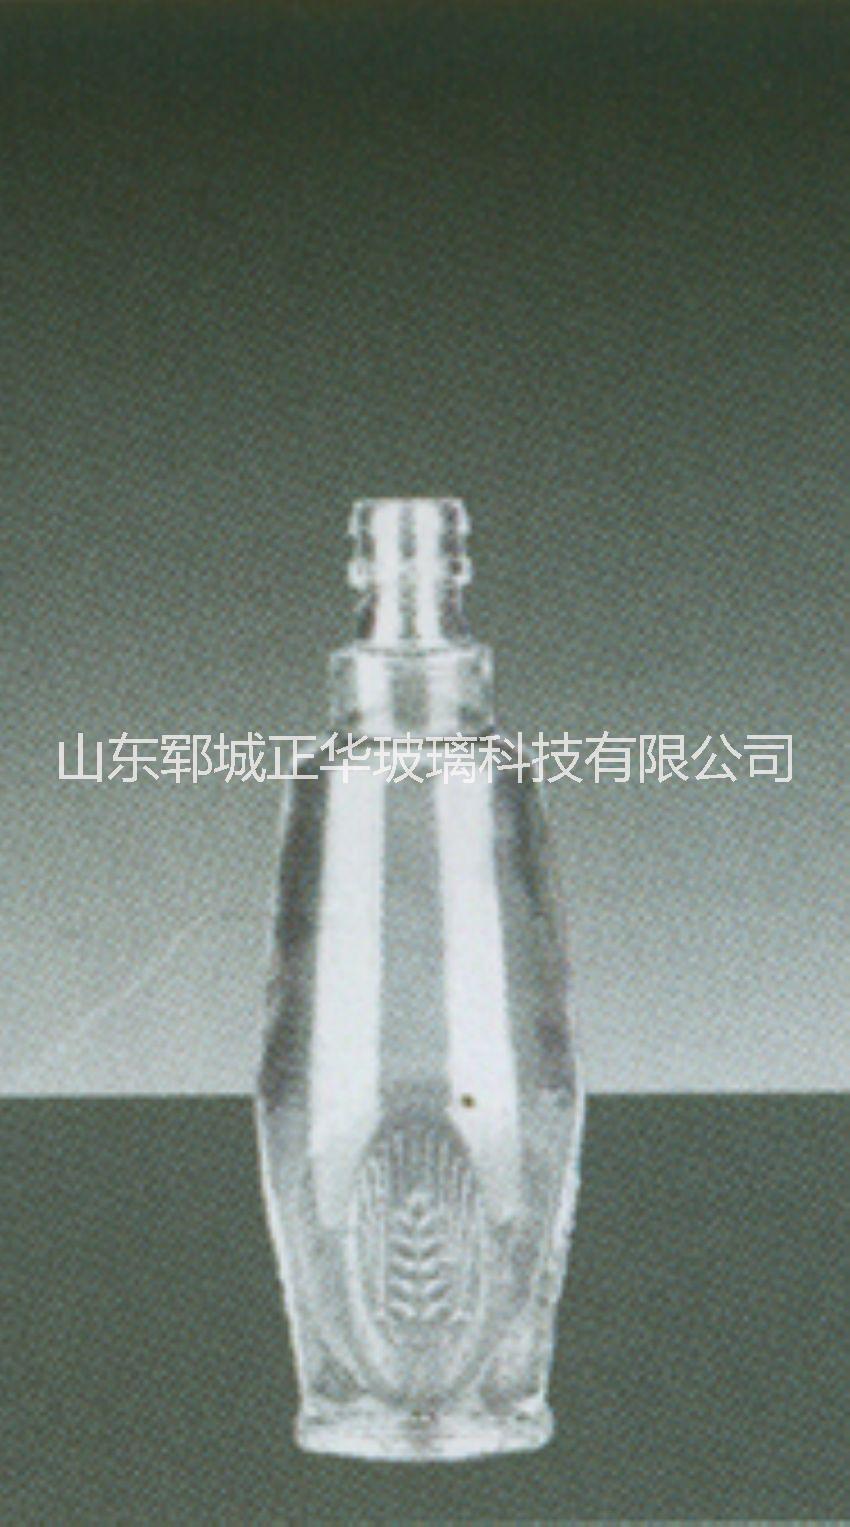 125ml酒瓶厂家定制 优质125ml酒瓶 125毫升酒瓶批发图片